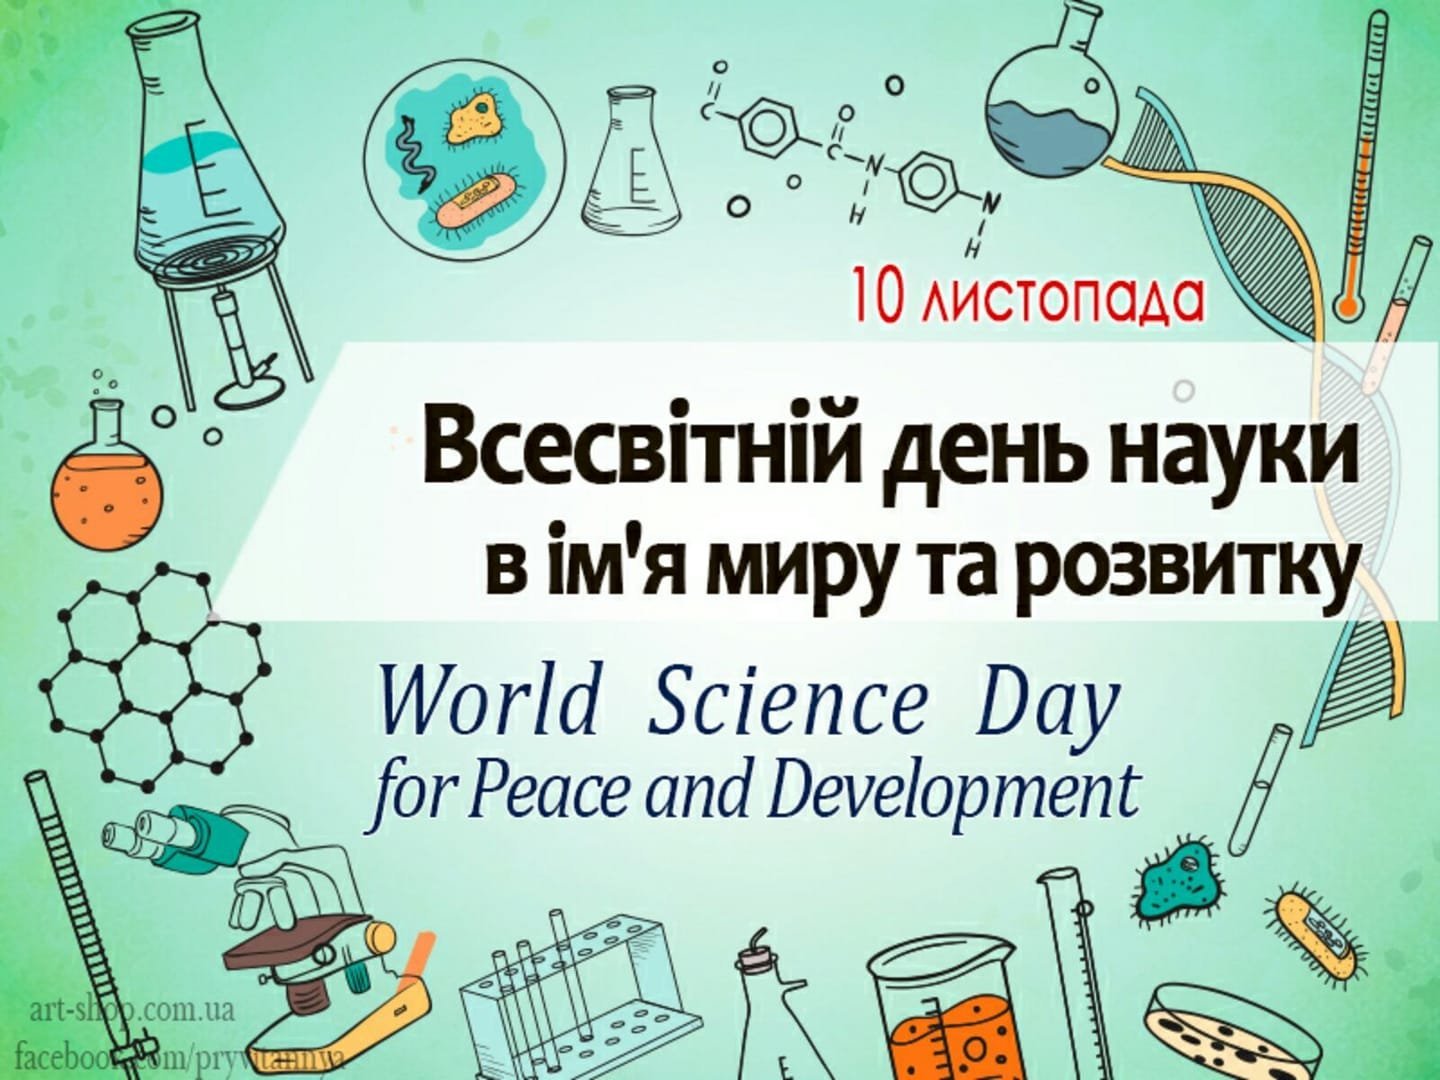 Всемирный день науки (World Science Day)